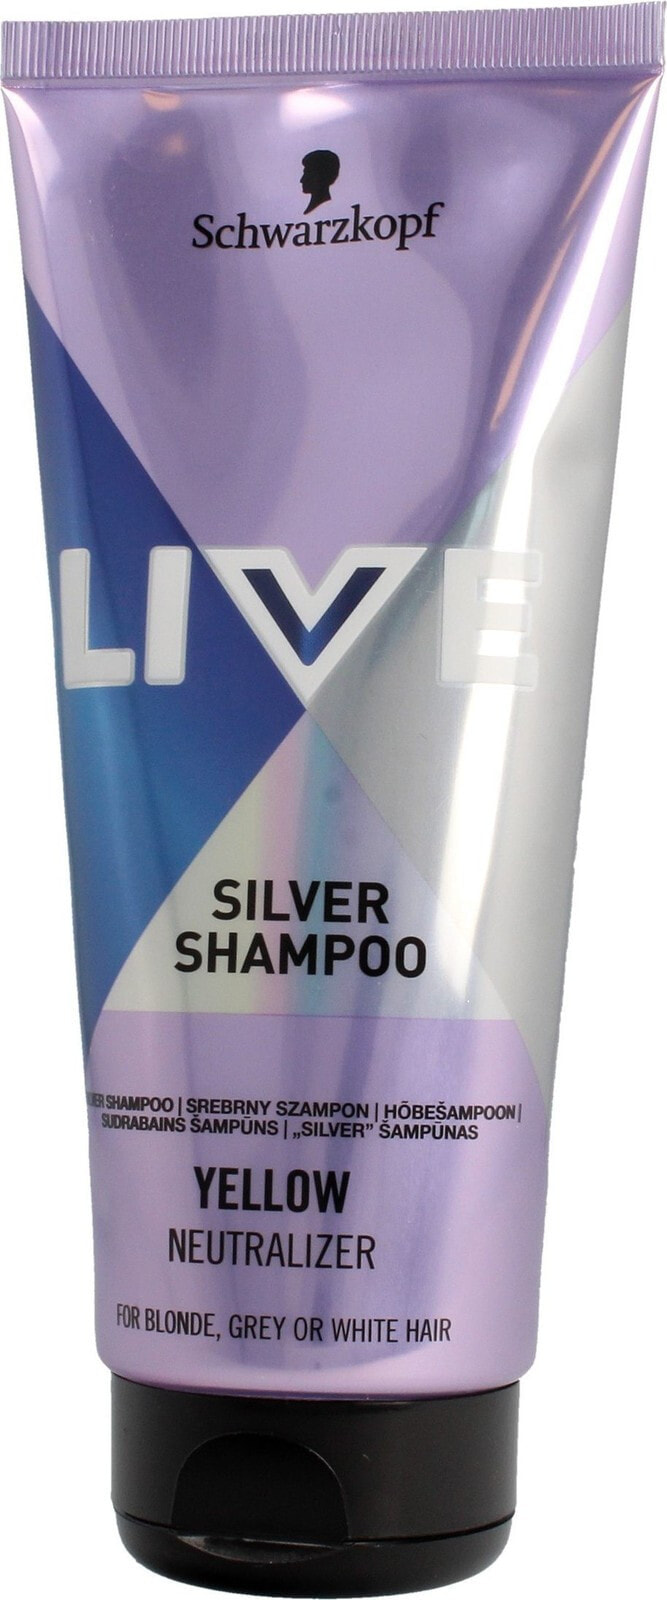 Schwarzkopf Live Silver Shampoo Оттеночный серебристый шампунь для светлых, осветленных и седых волос 200 мл